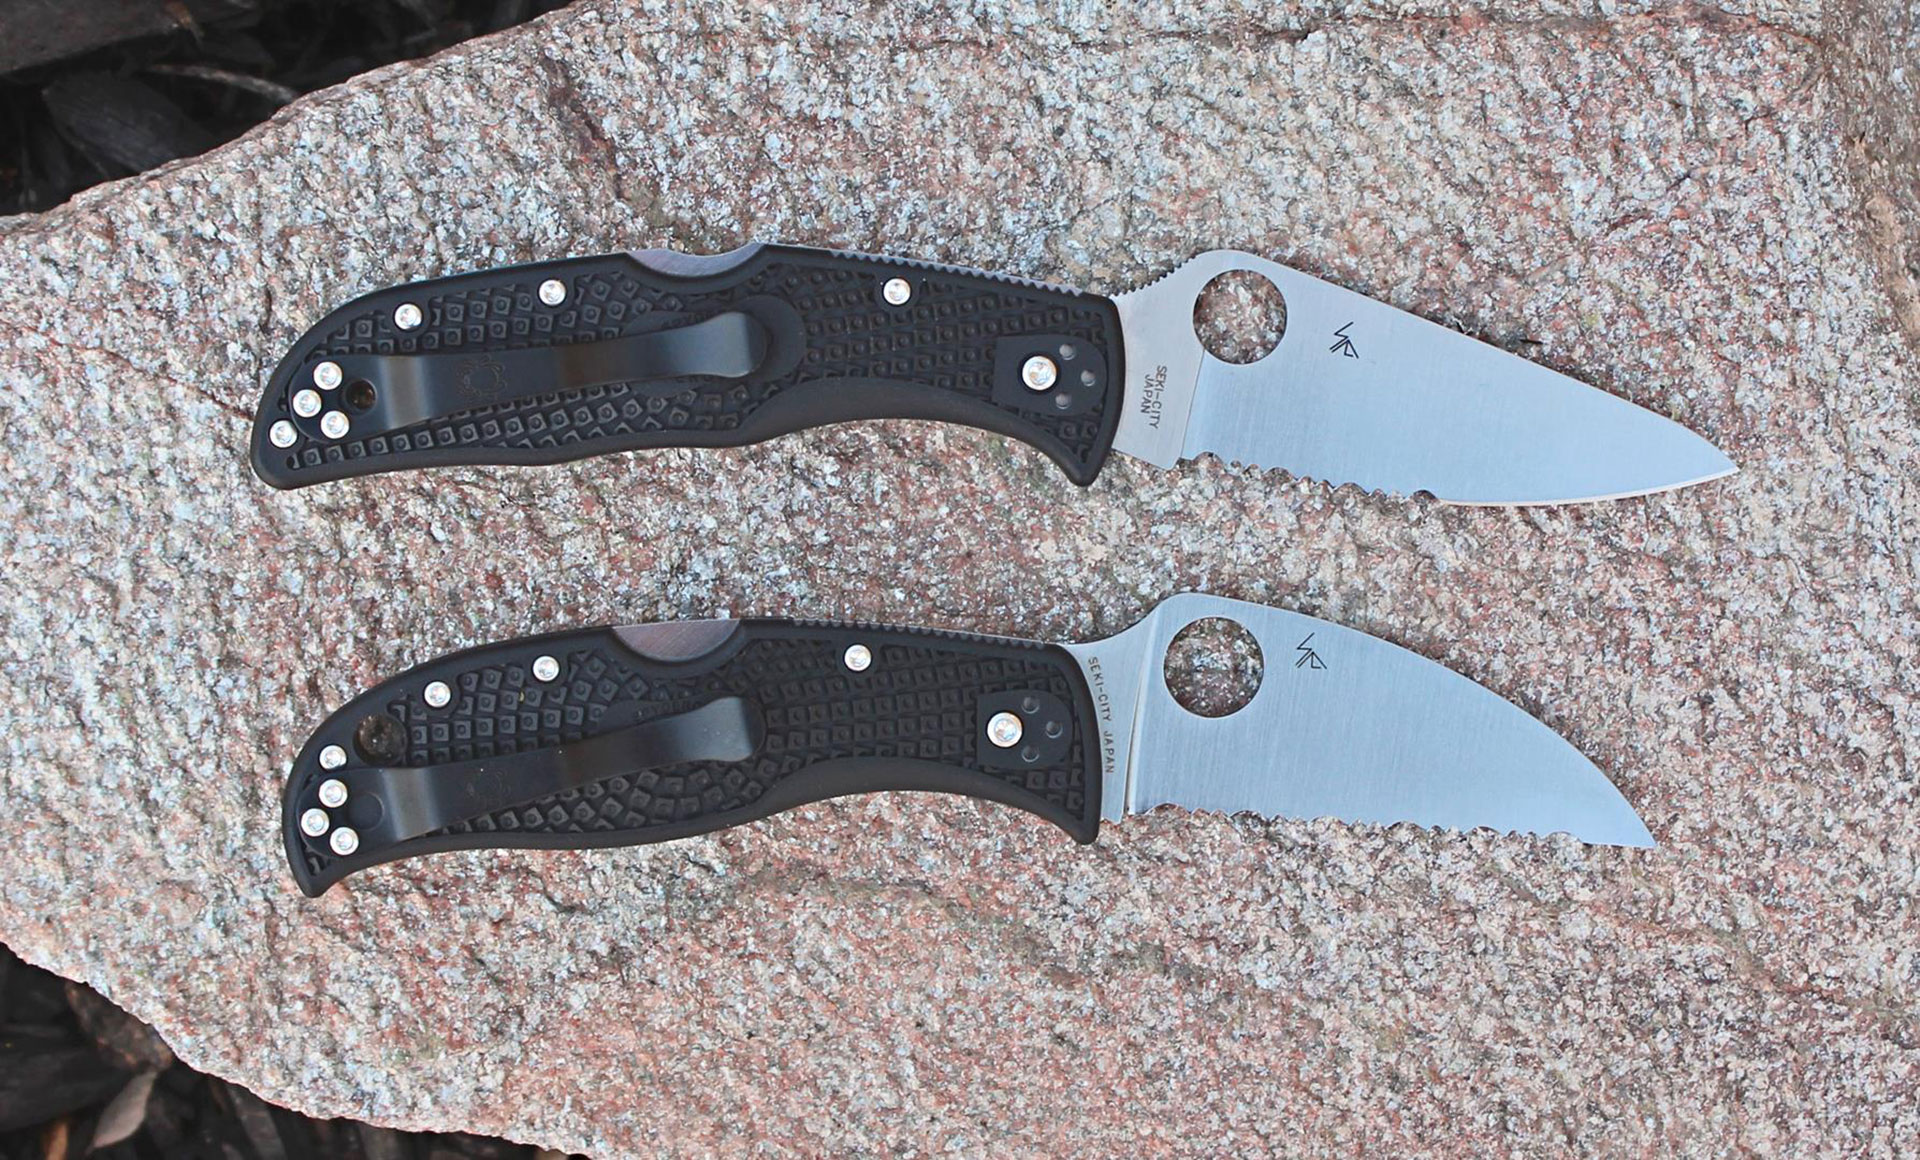 Spyderco Endela and RockJumper folding knives.